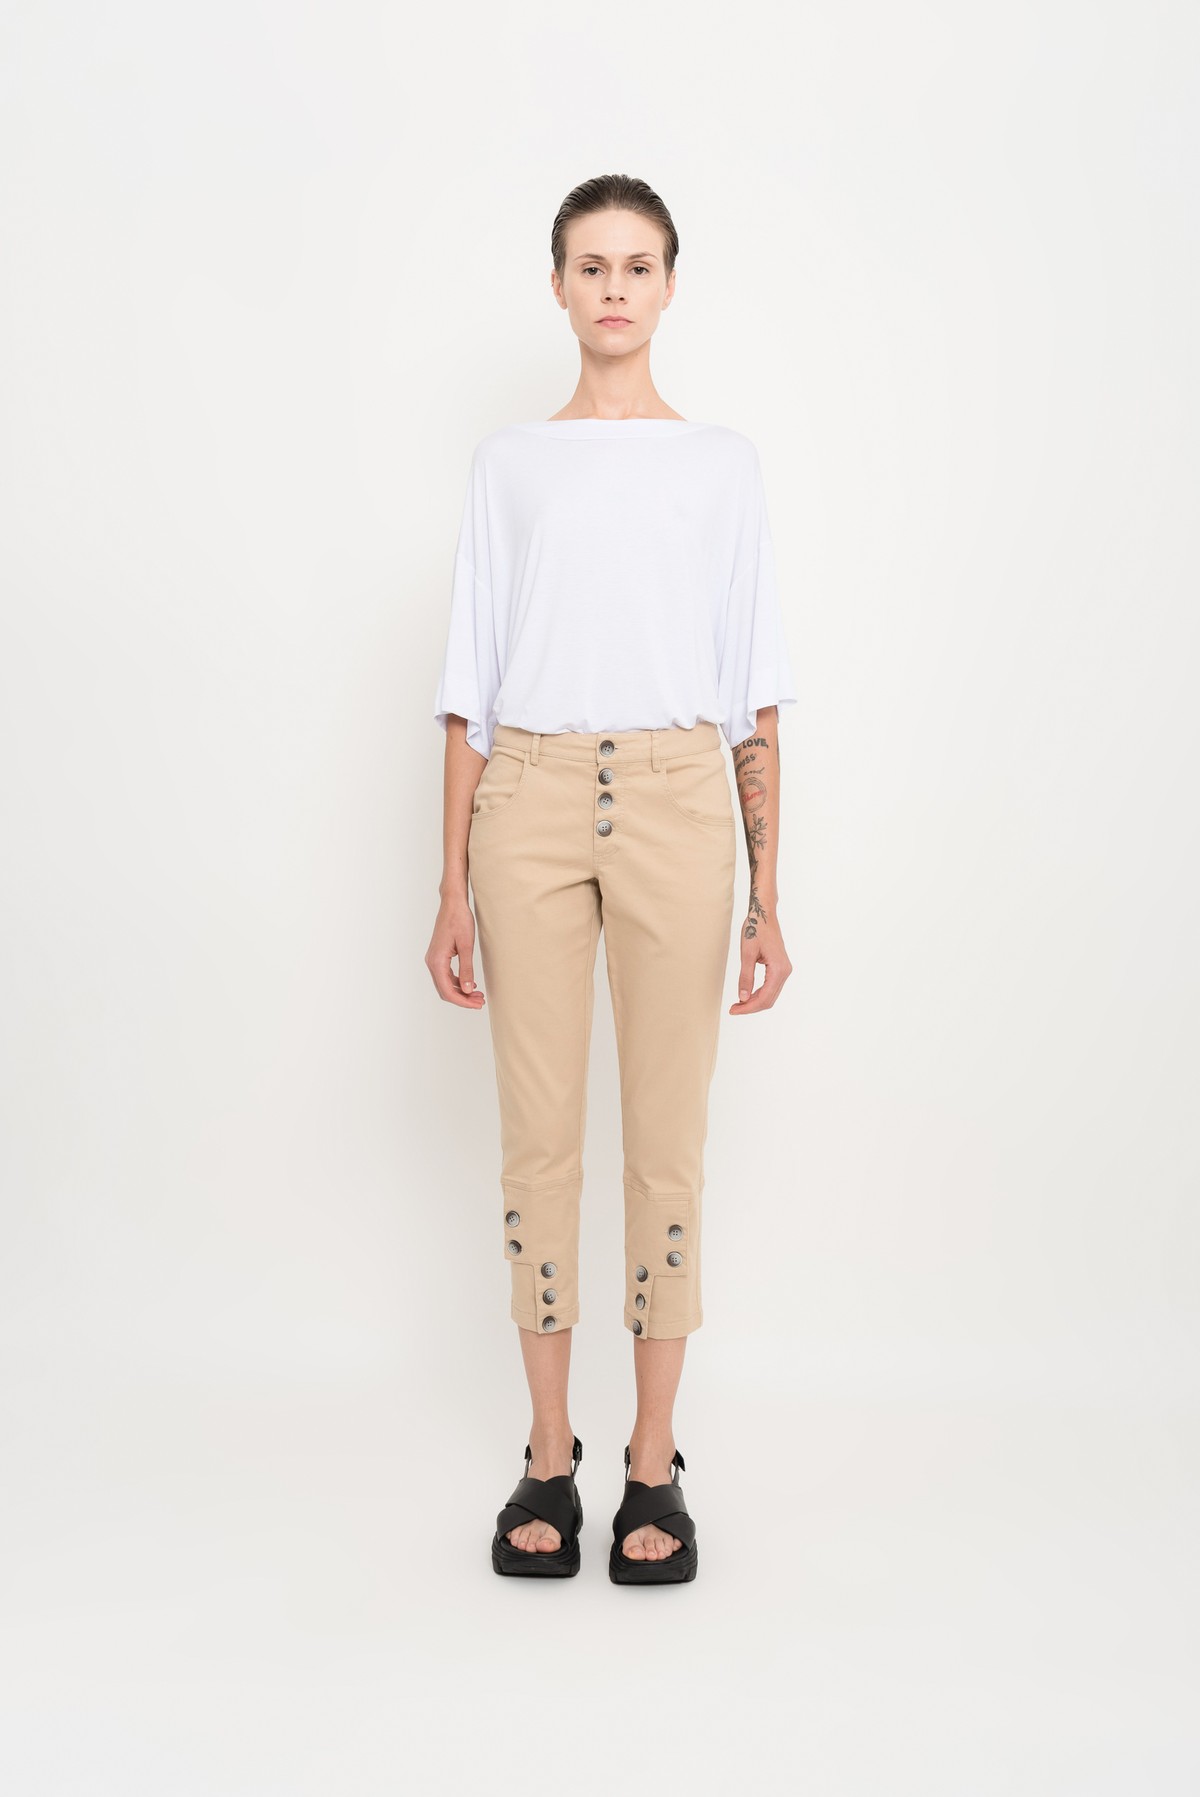 calça em sarja com botões | modal twill pants with buttons